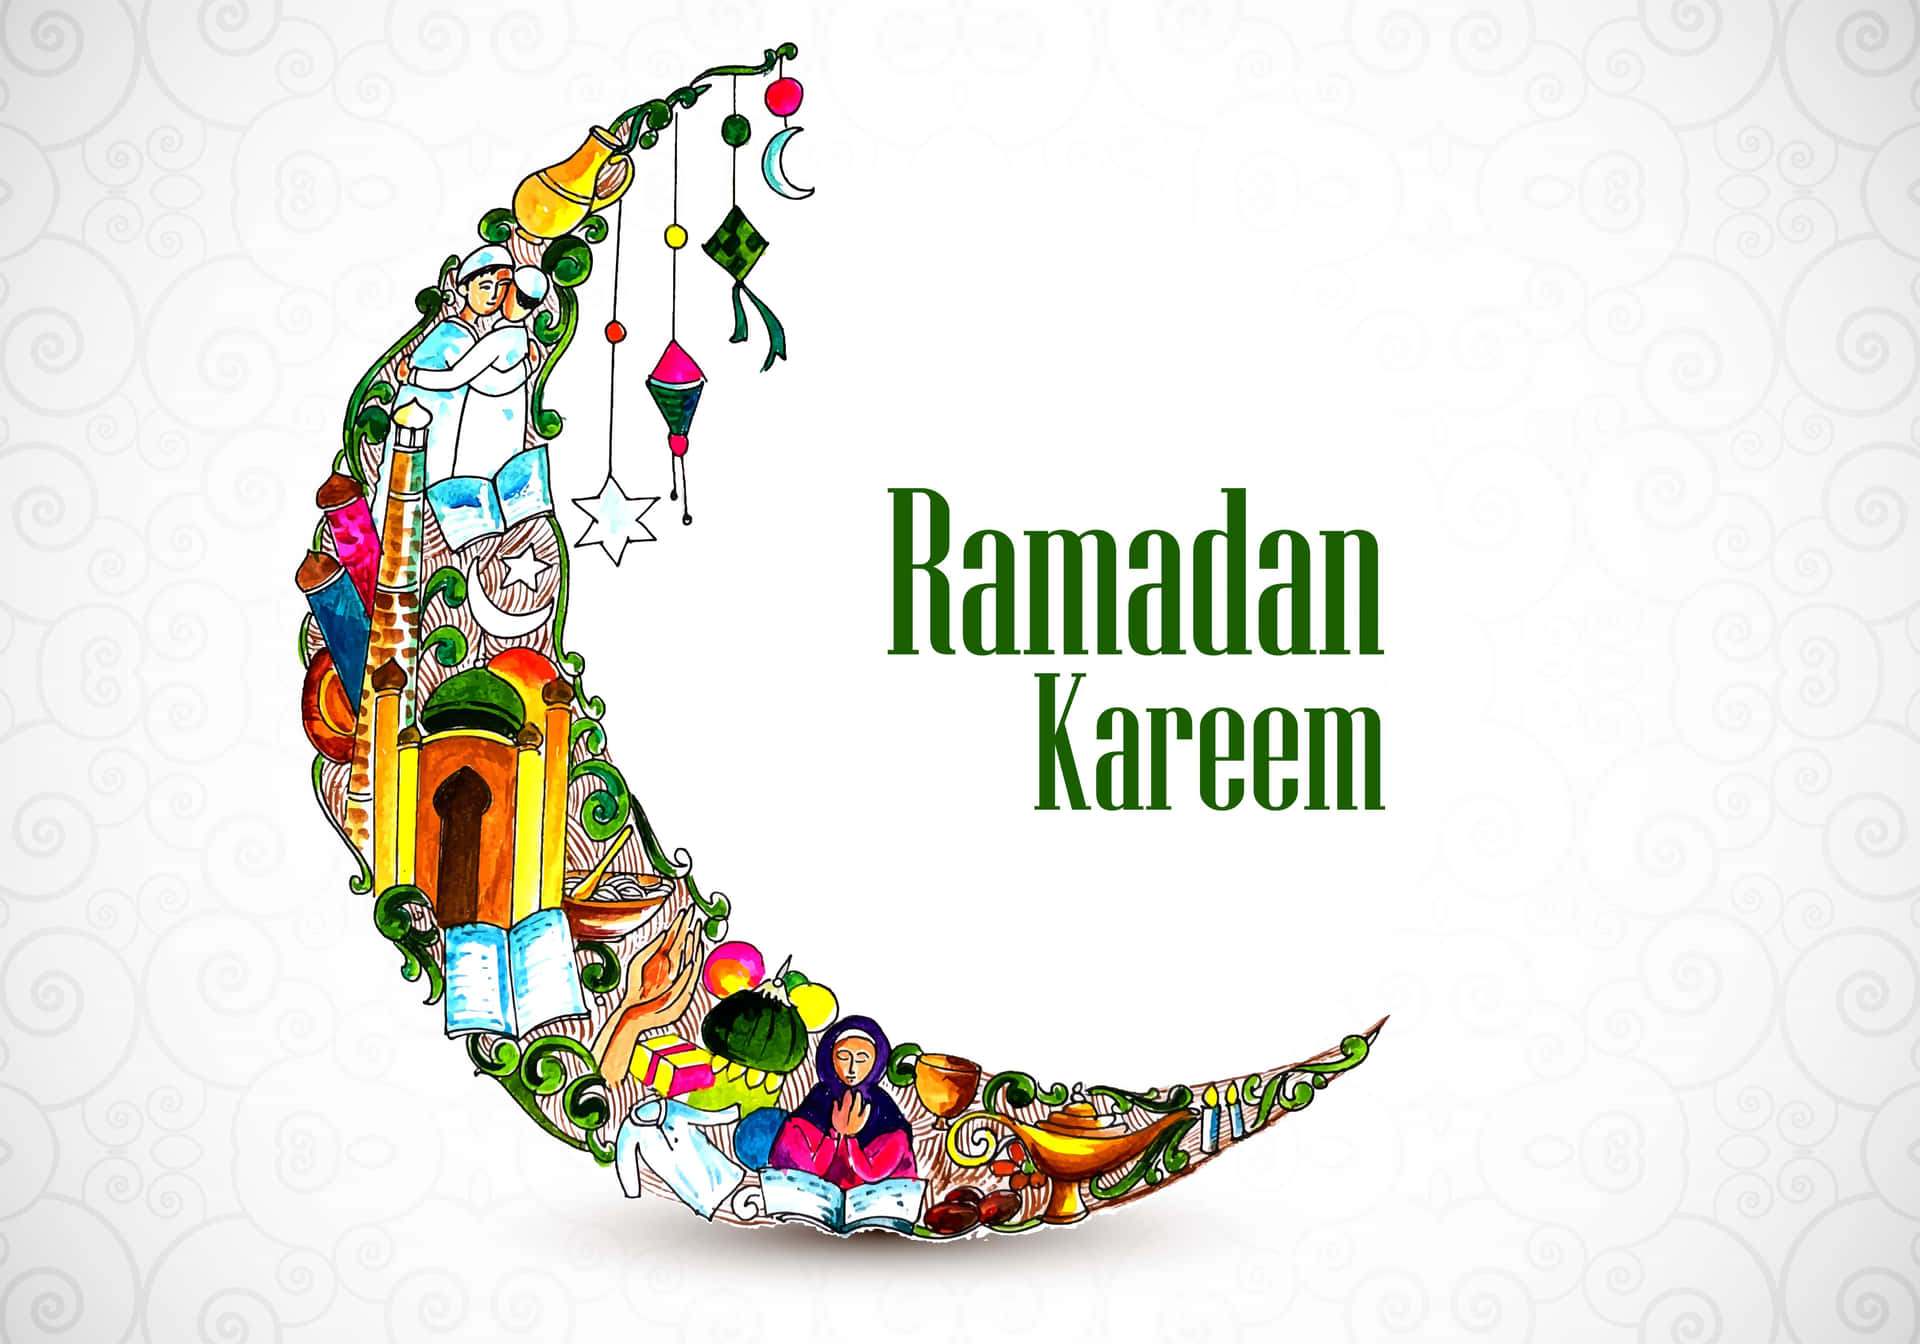 Imagendel Ramadán Kareem Con La Luna